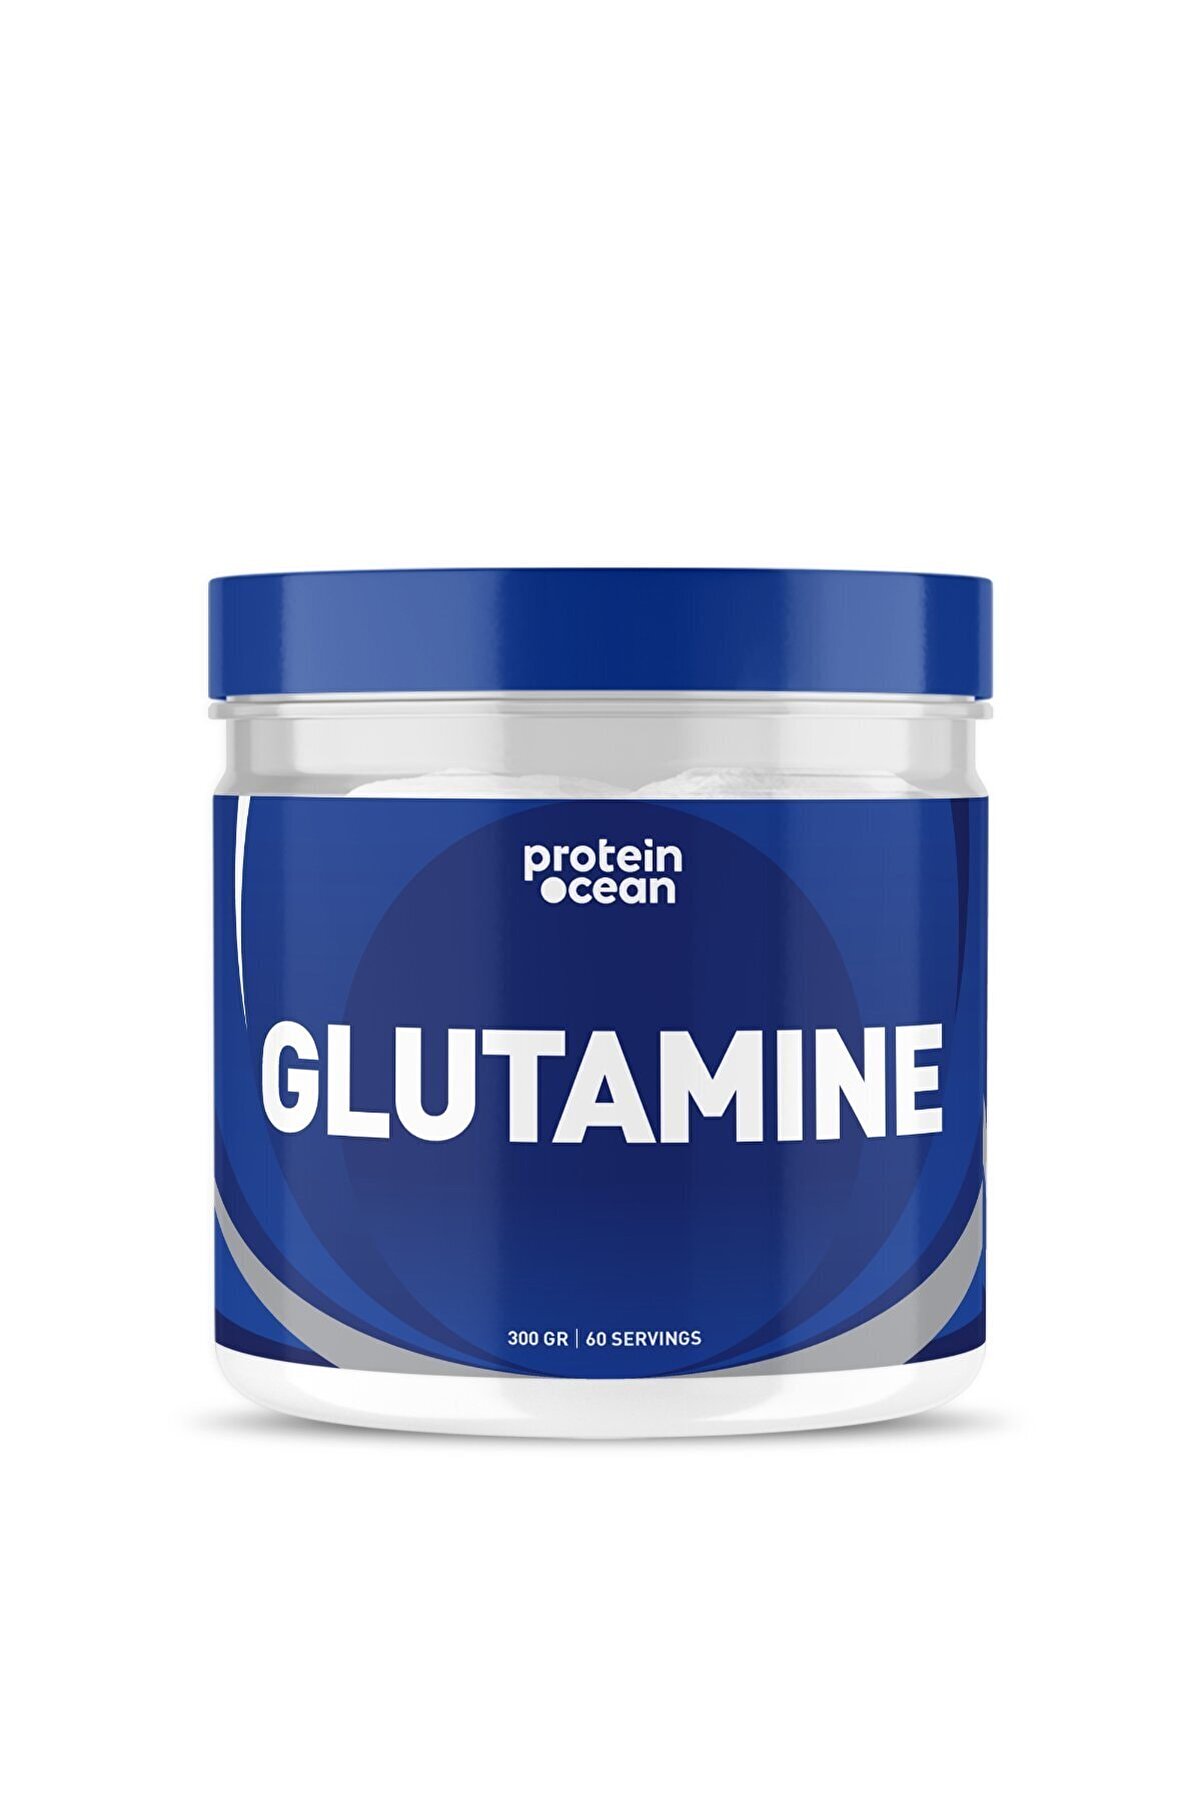 Proteinocean Glutamine - 300g - 60 Servis